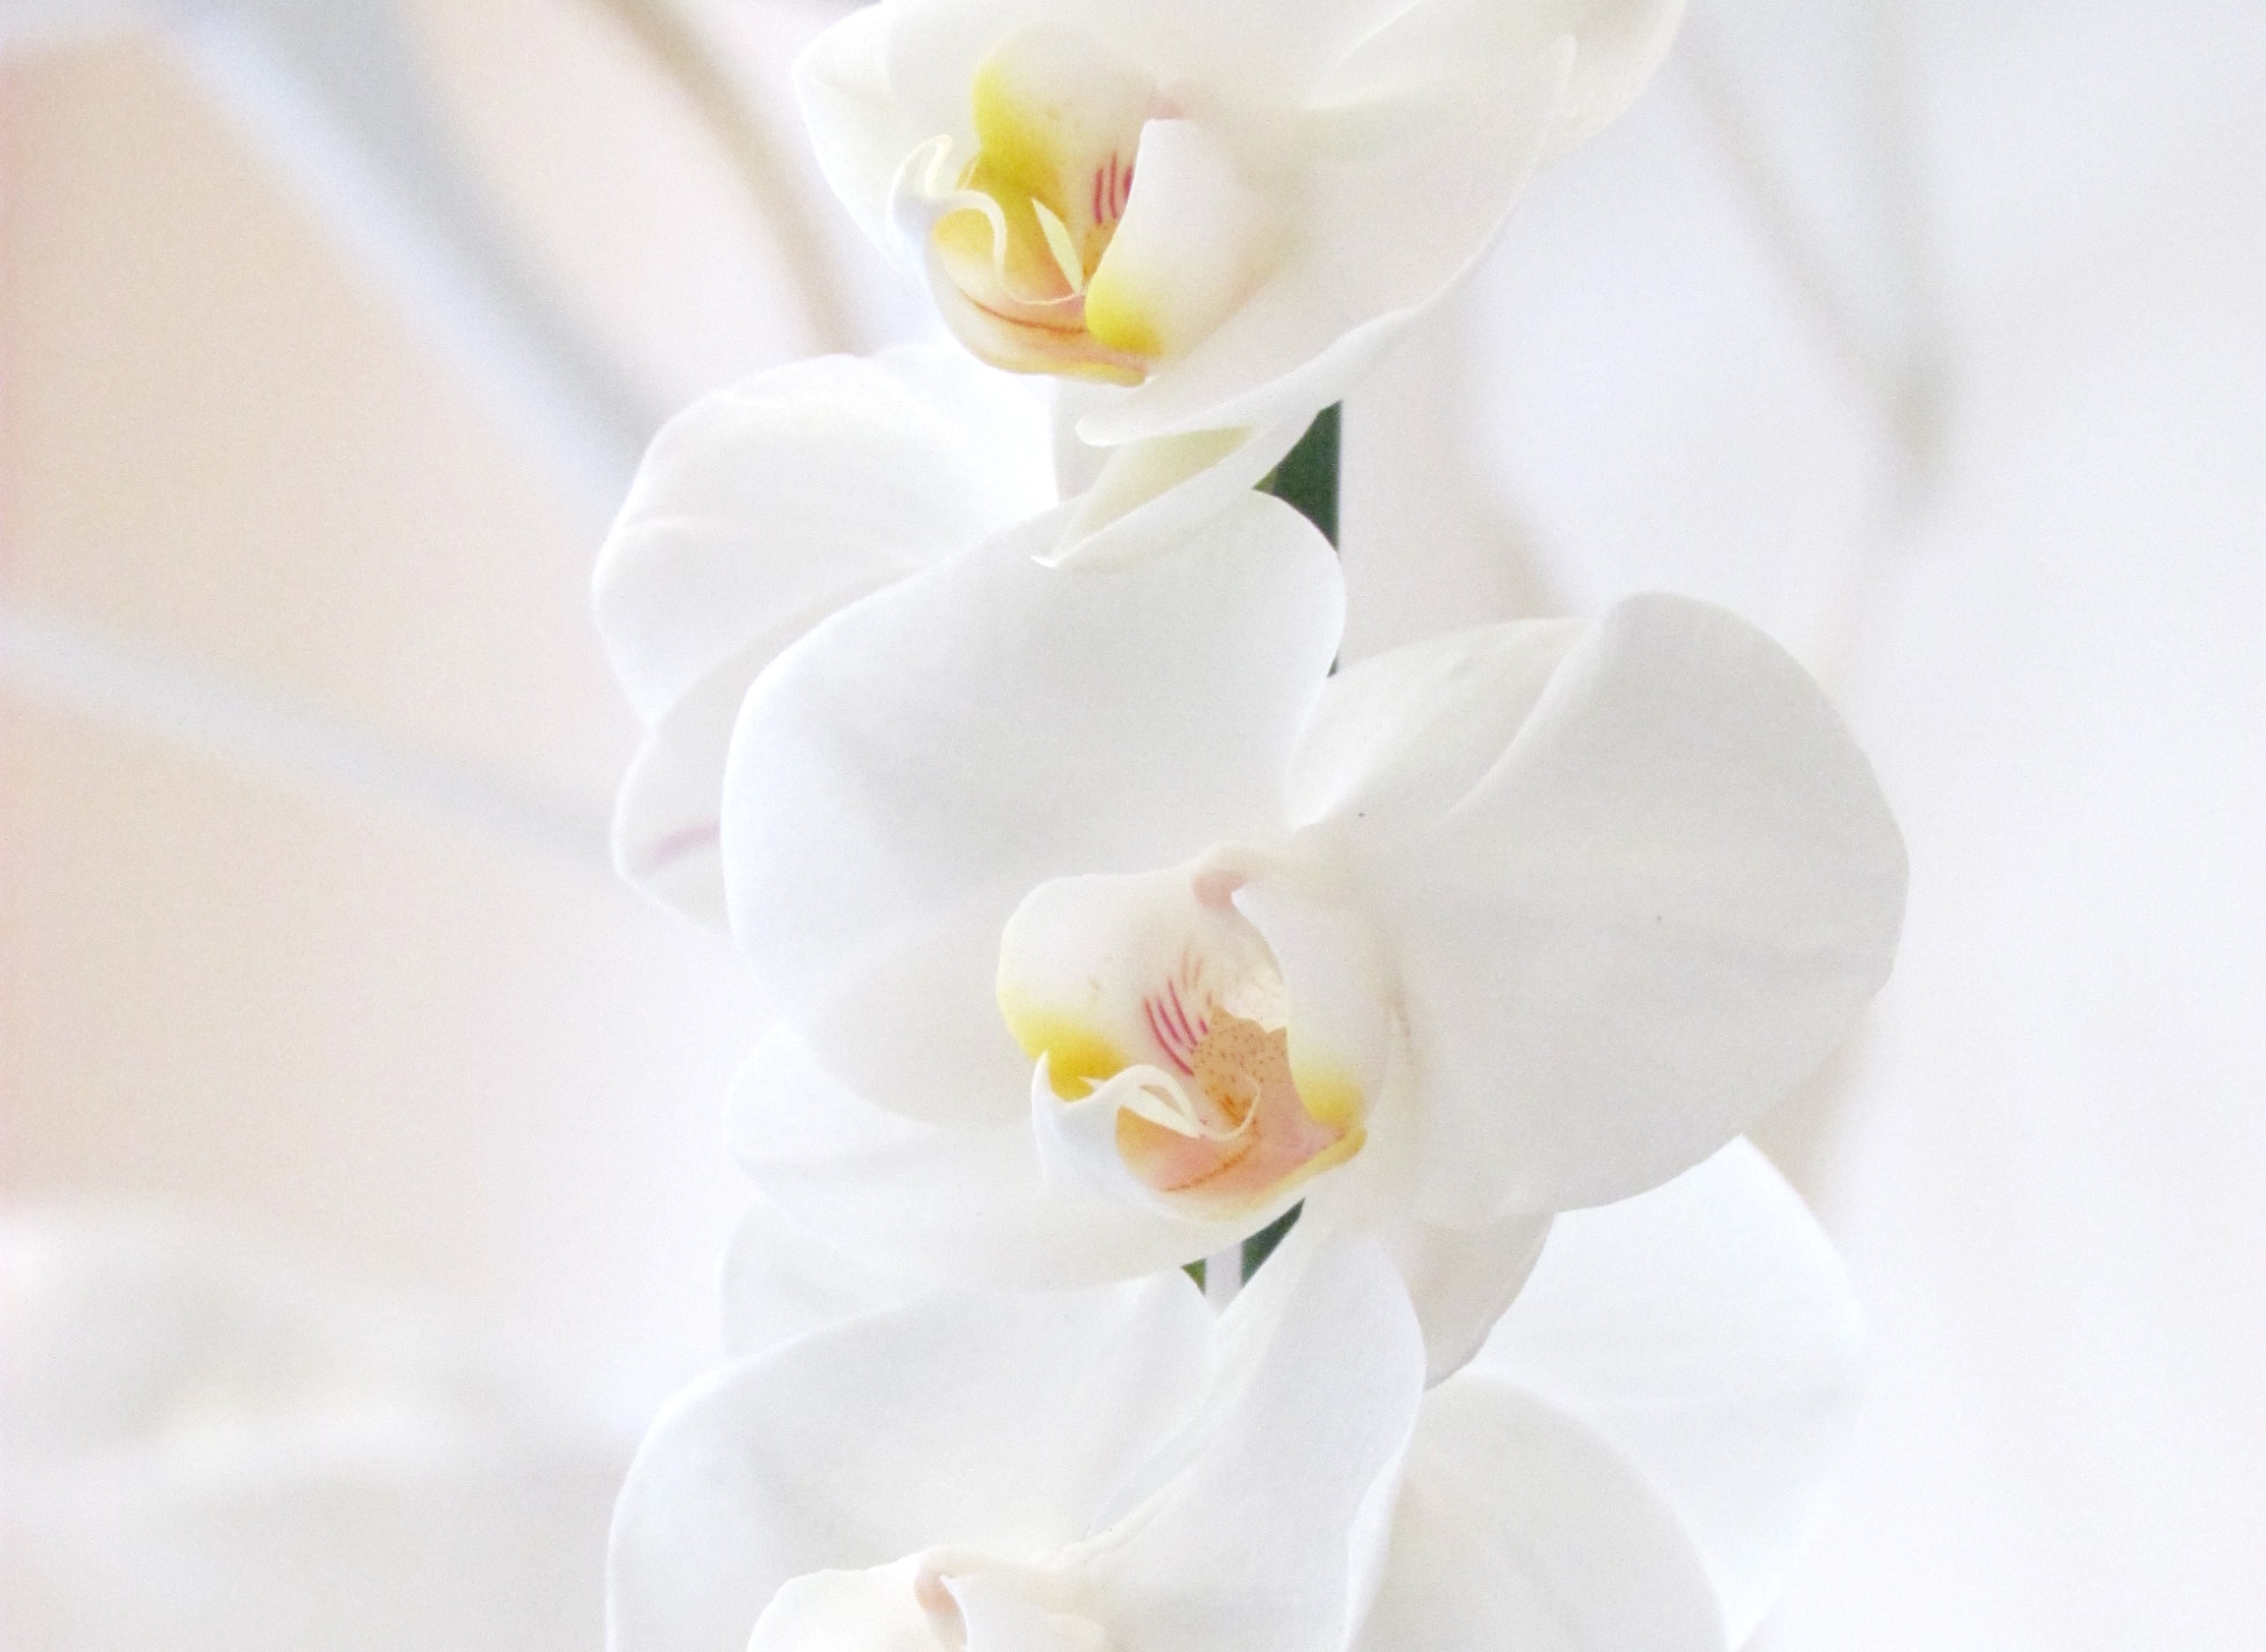 Il significato dei fiori: un’orchidea per ringraziare